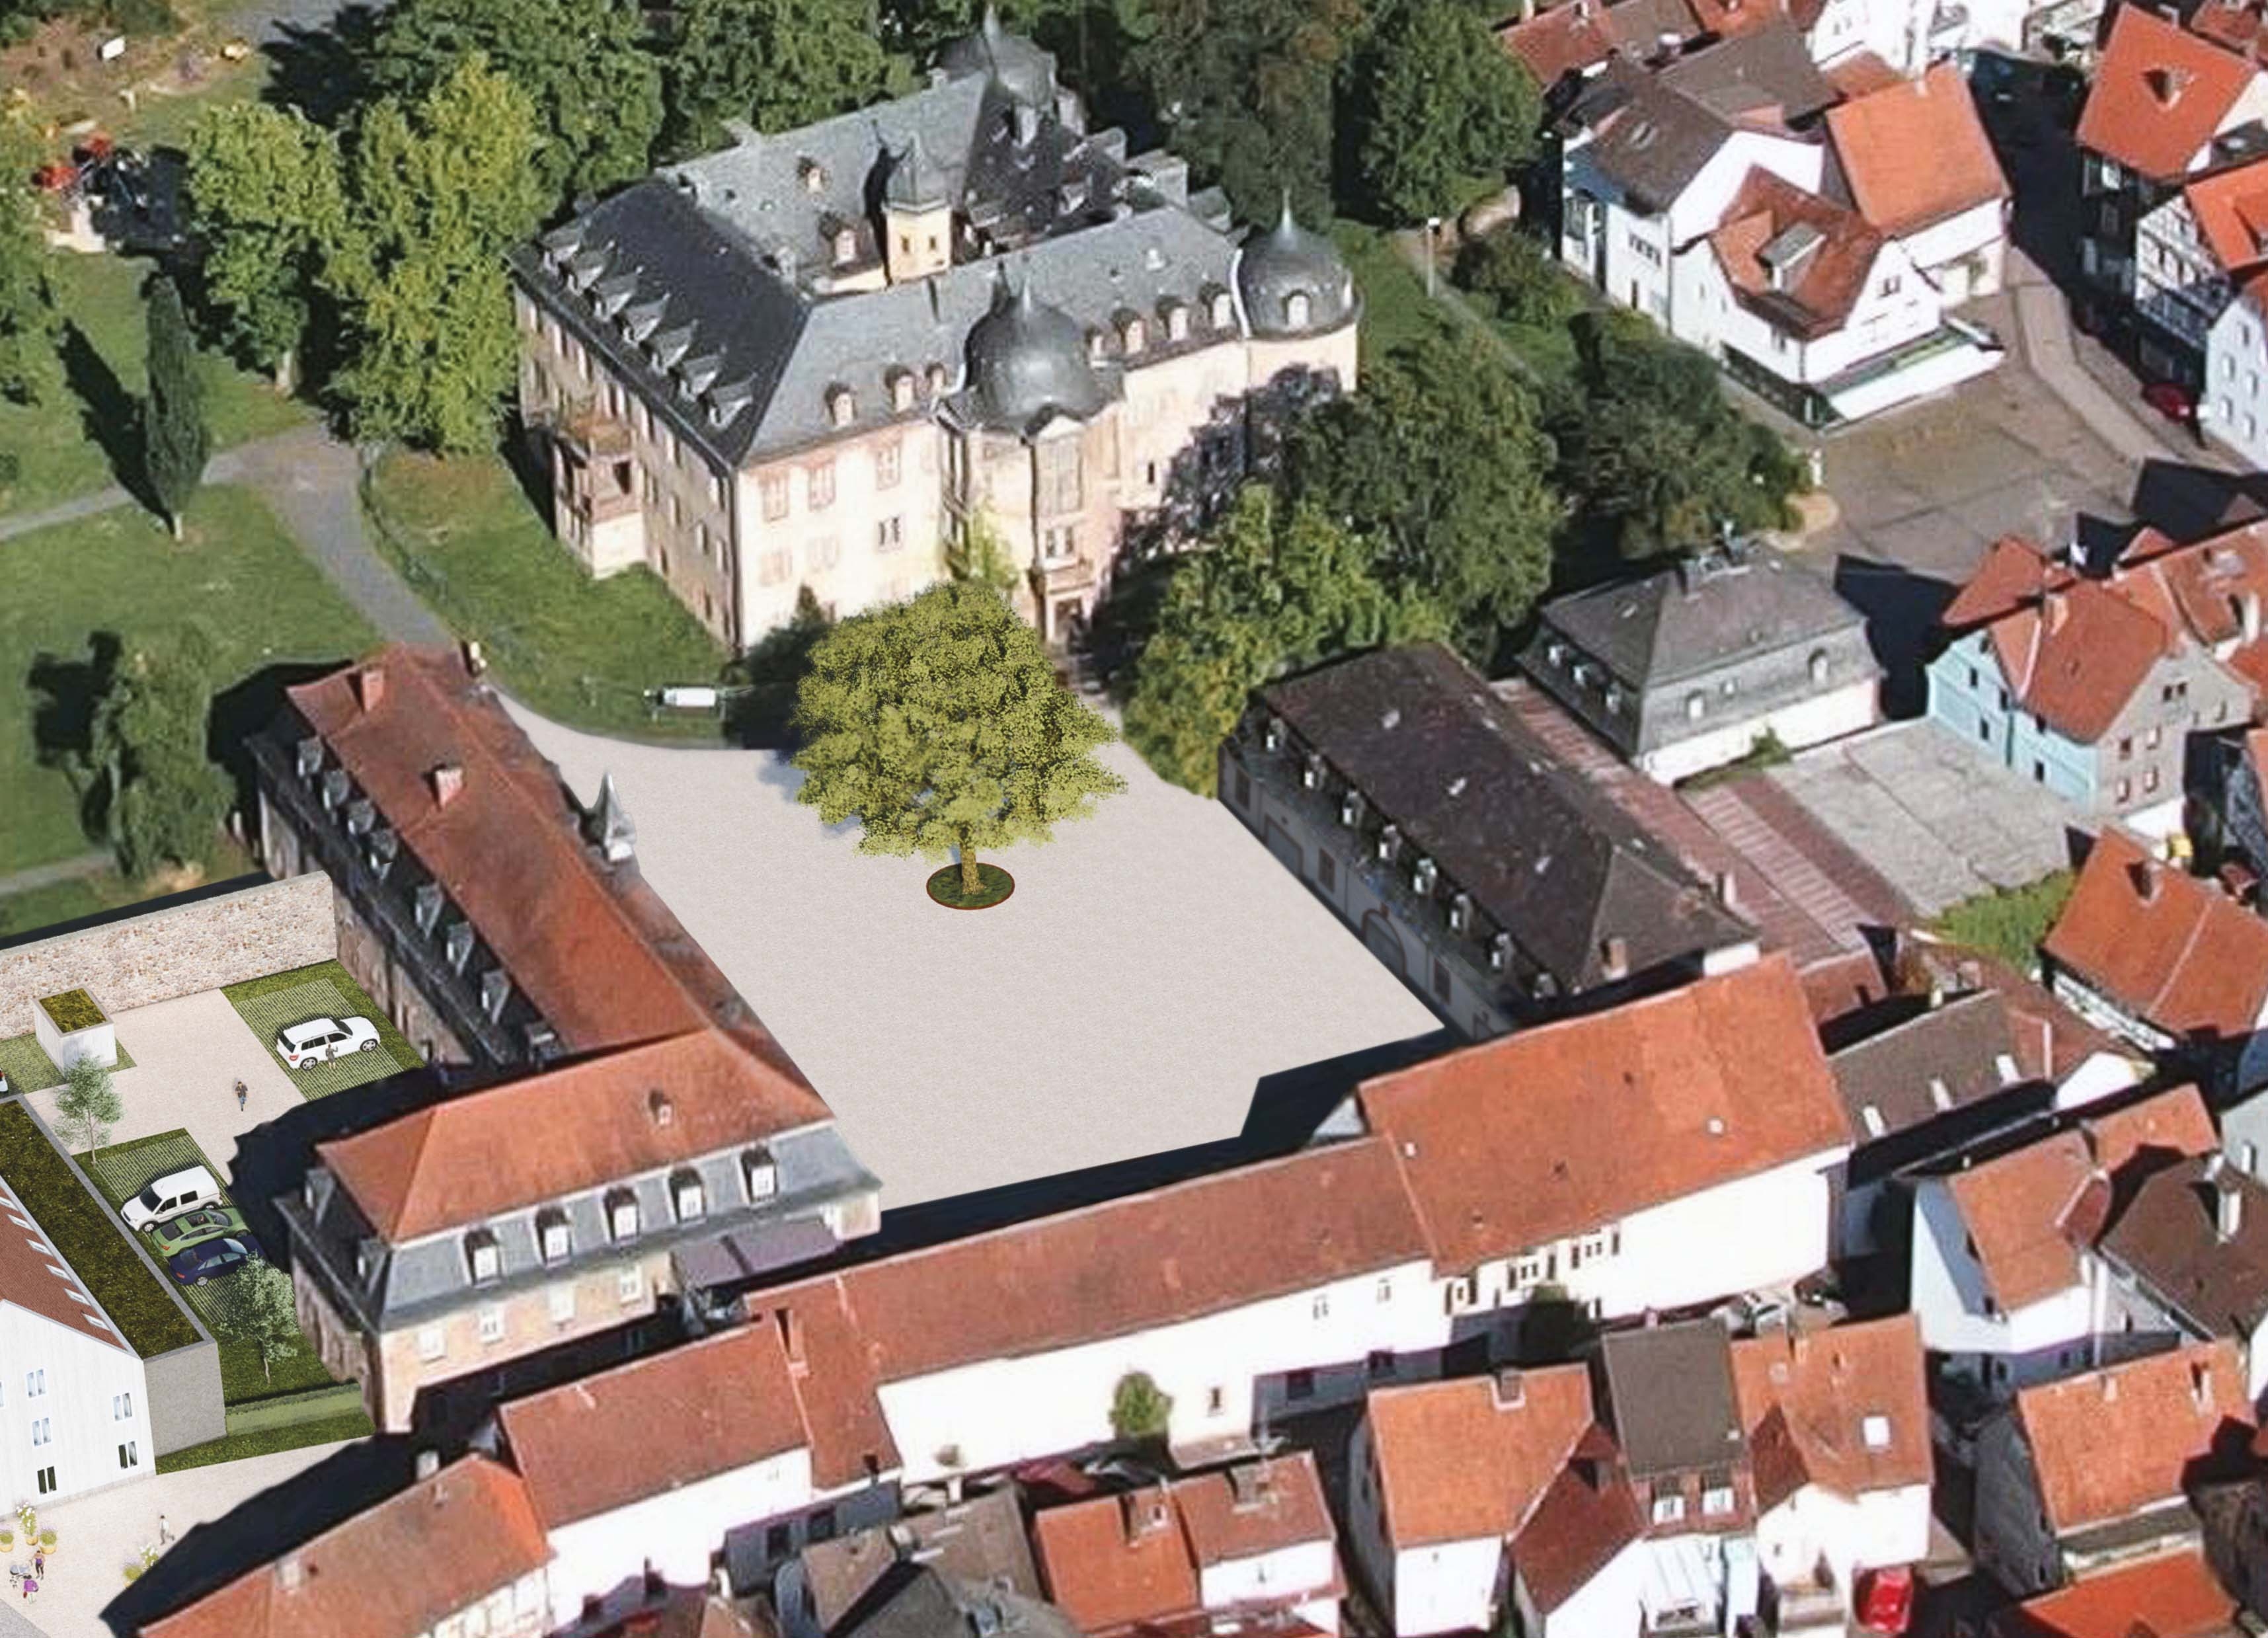 Schlosshof als neuer öffentlicher Ort